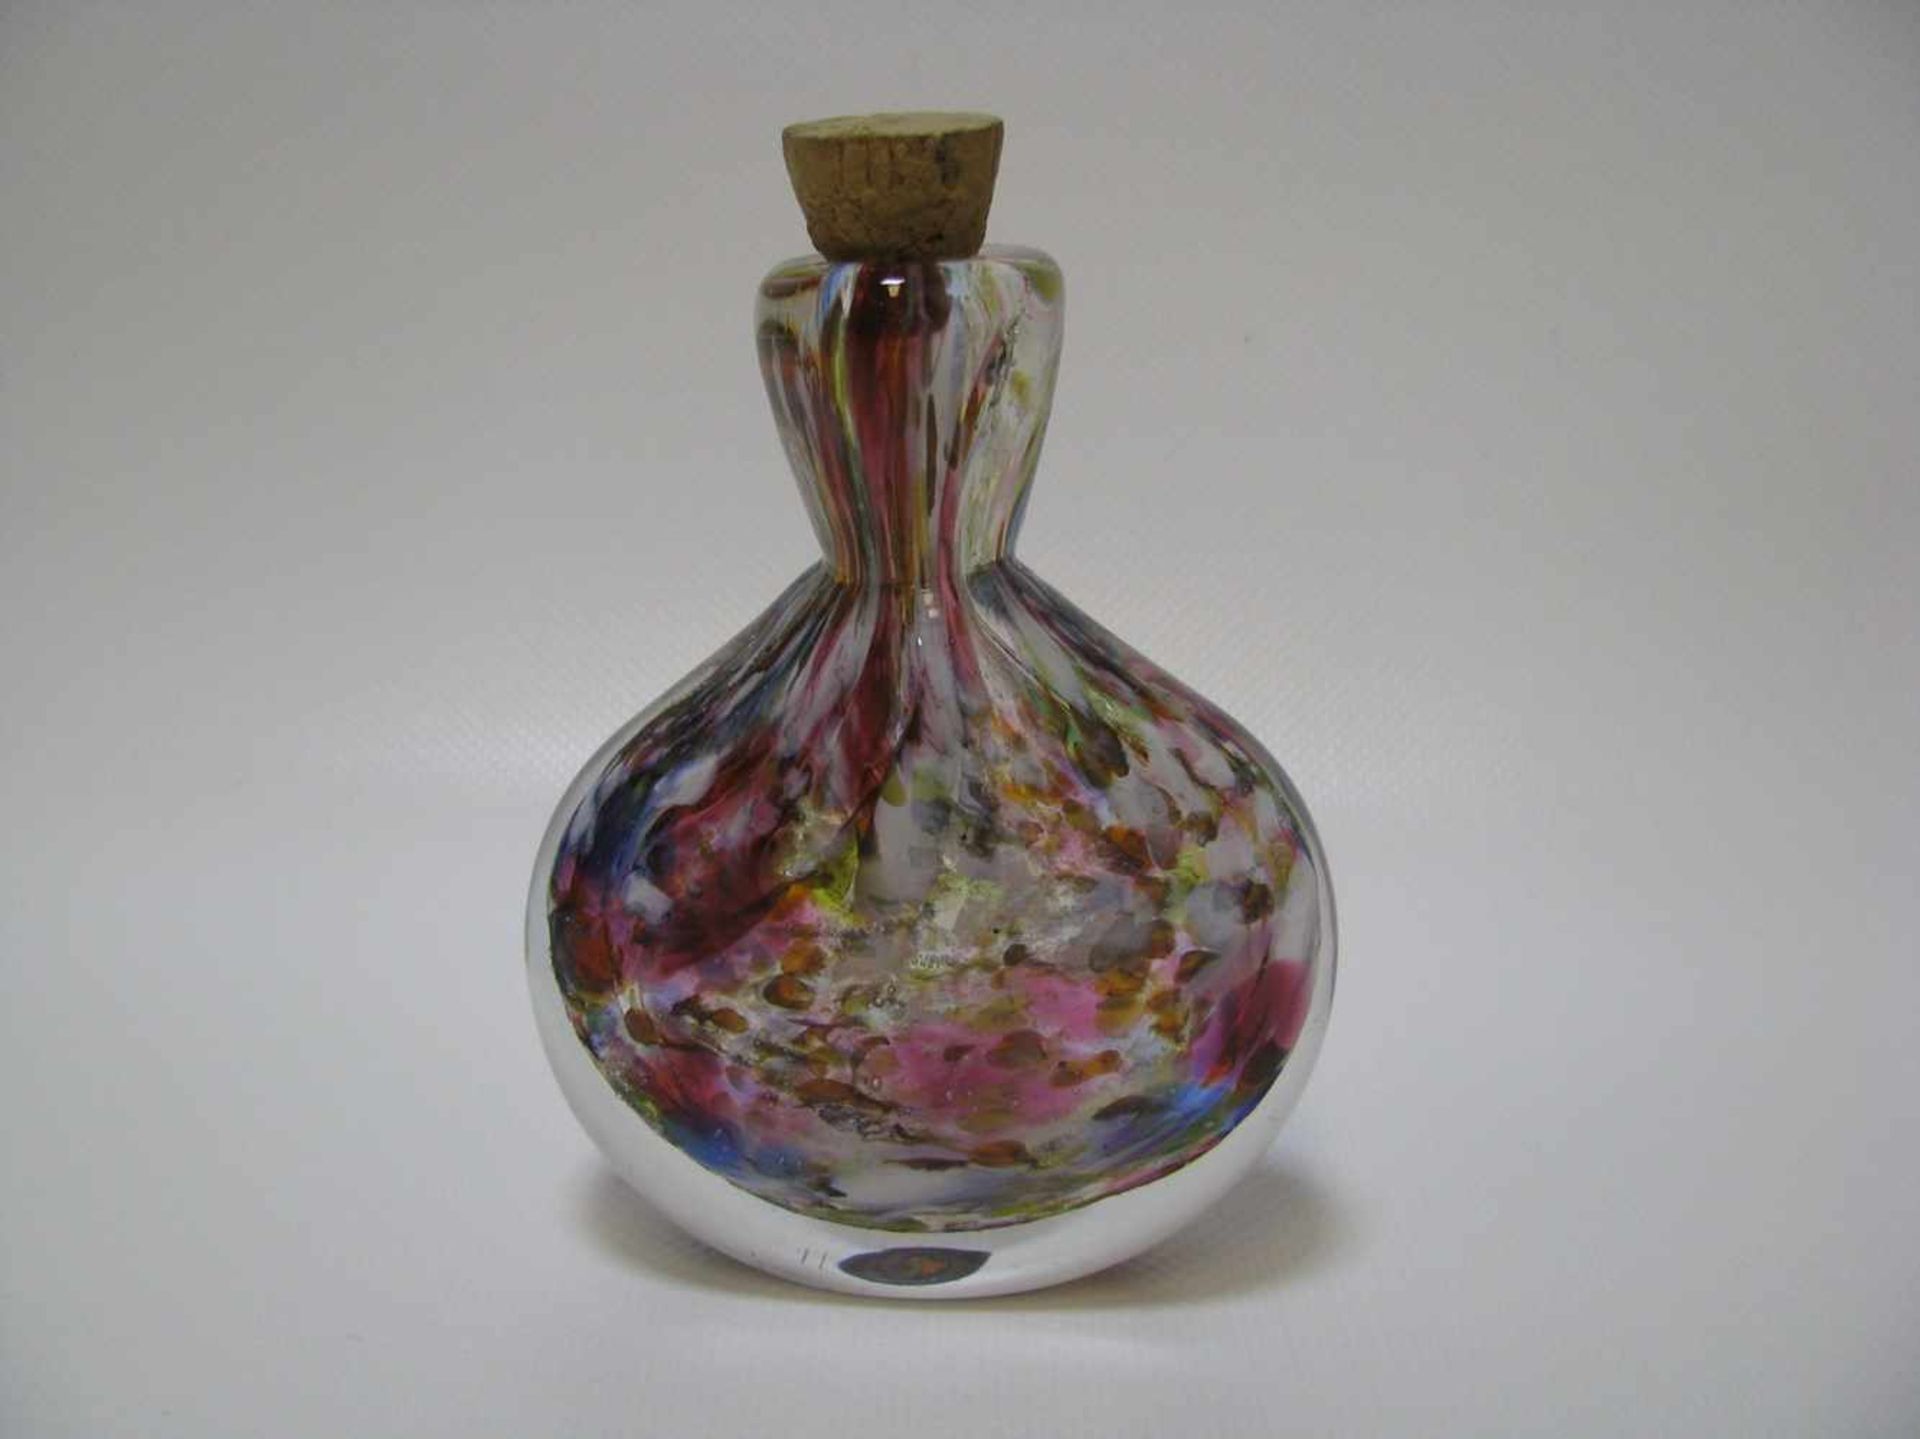 Schnupftabakflasche, Süddeutsch, um 1900, Glas mit polychromen Einschmelzungen, 10,5 x 8,5 x 3 cm.